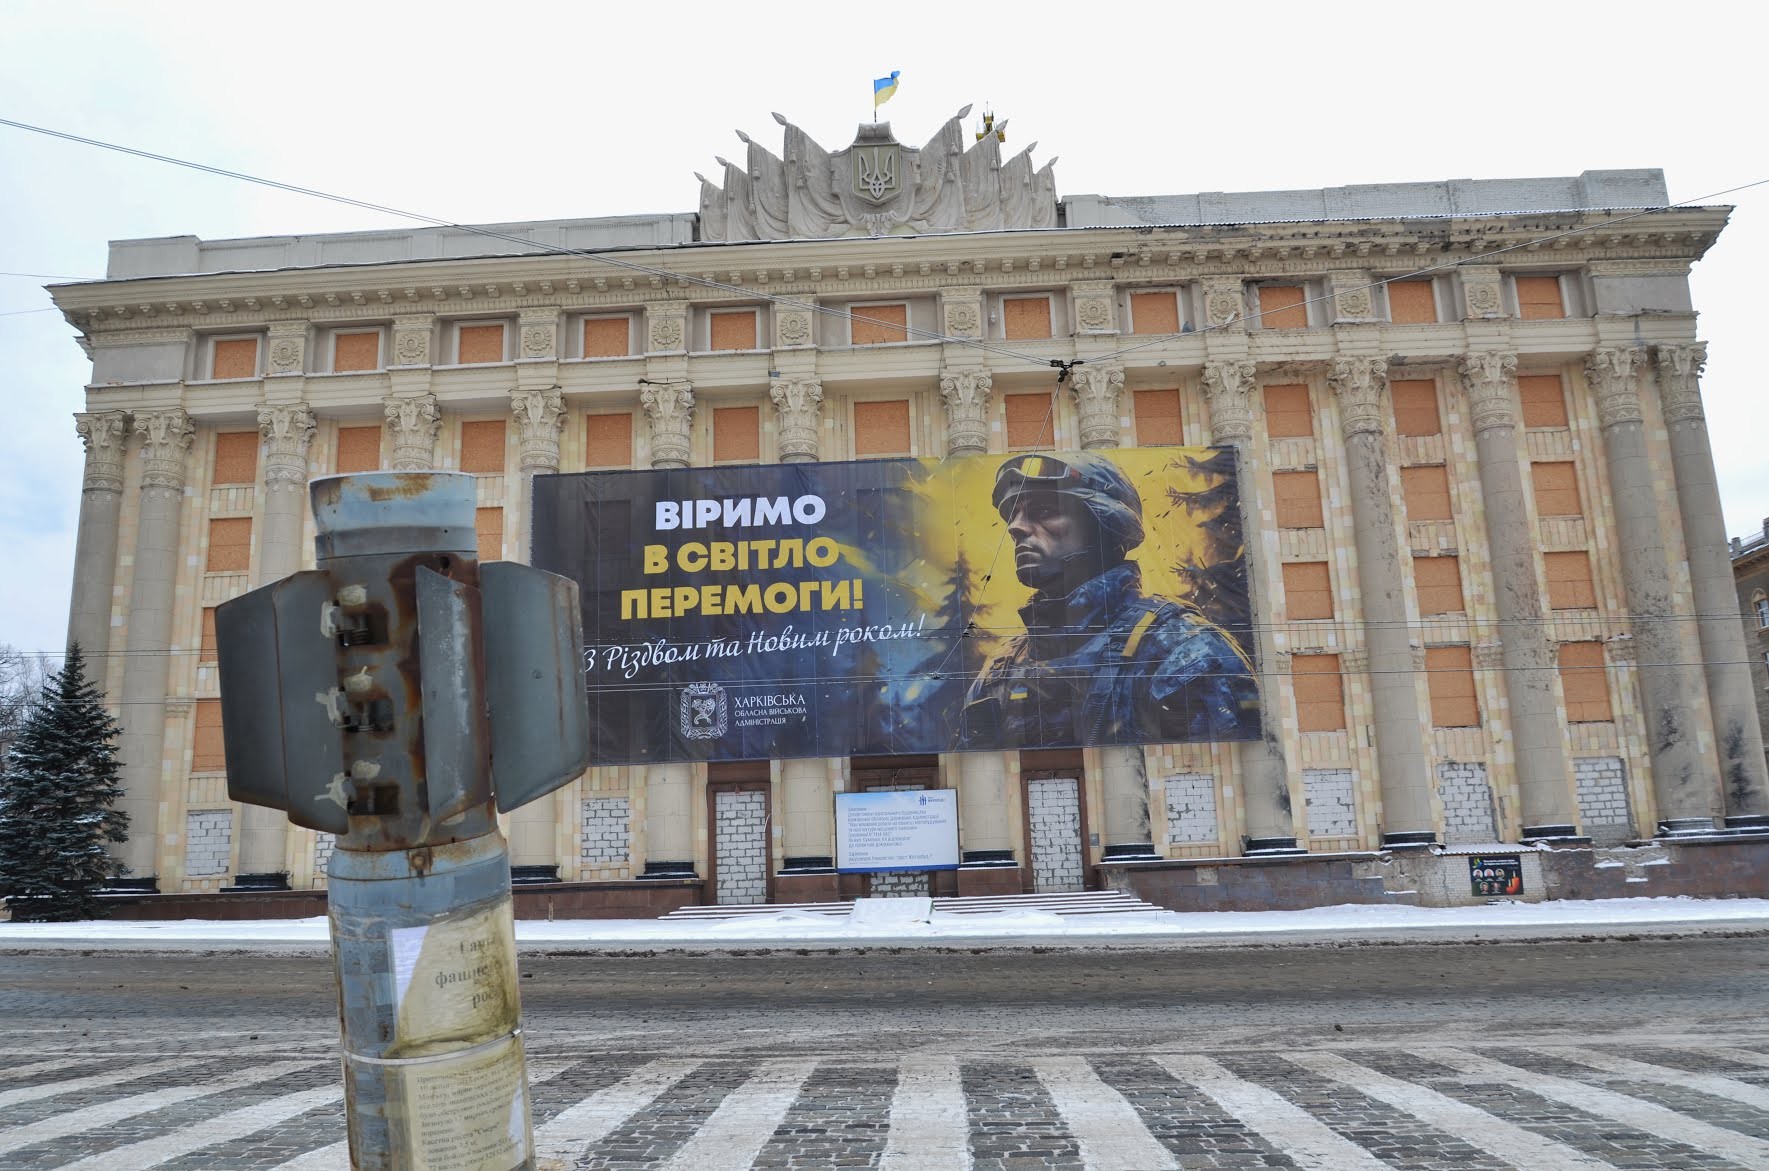 ثاني اكبر المدن الاوكرانية تحت السيطرة: روسيا تستعد للسيطرة على خاركيف